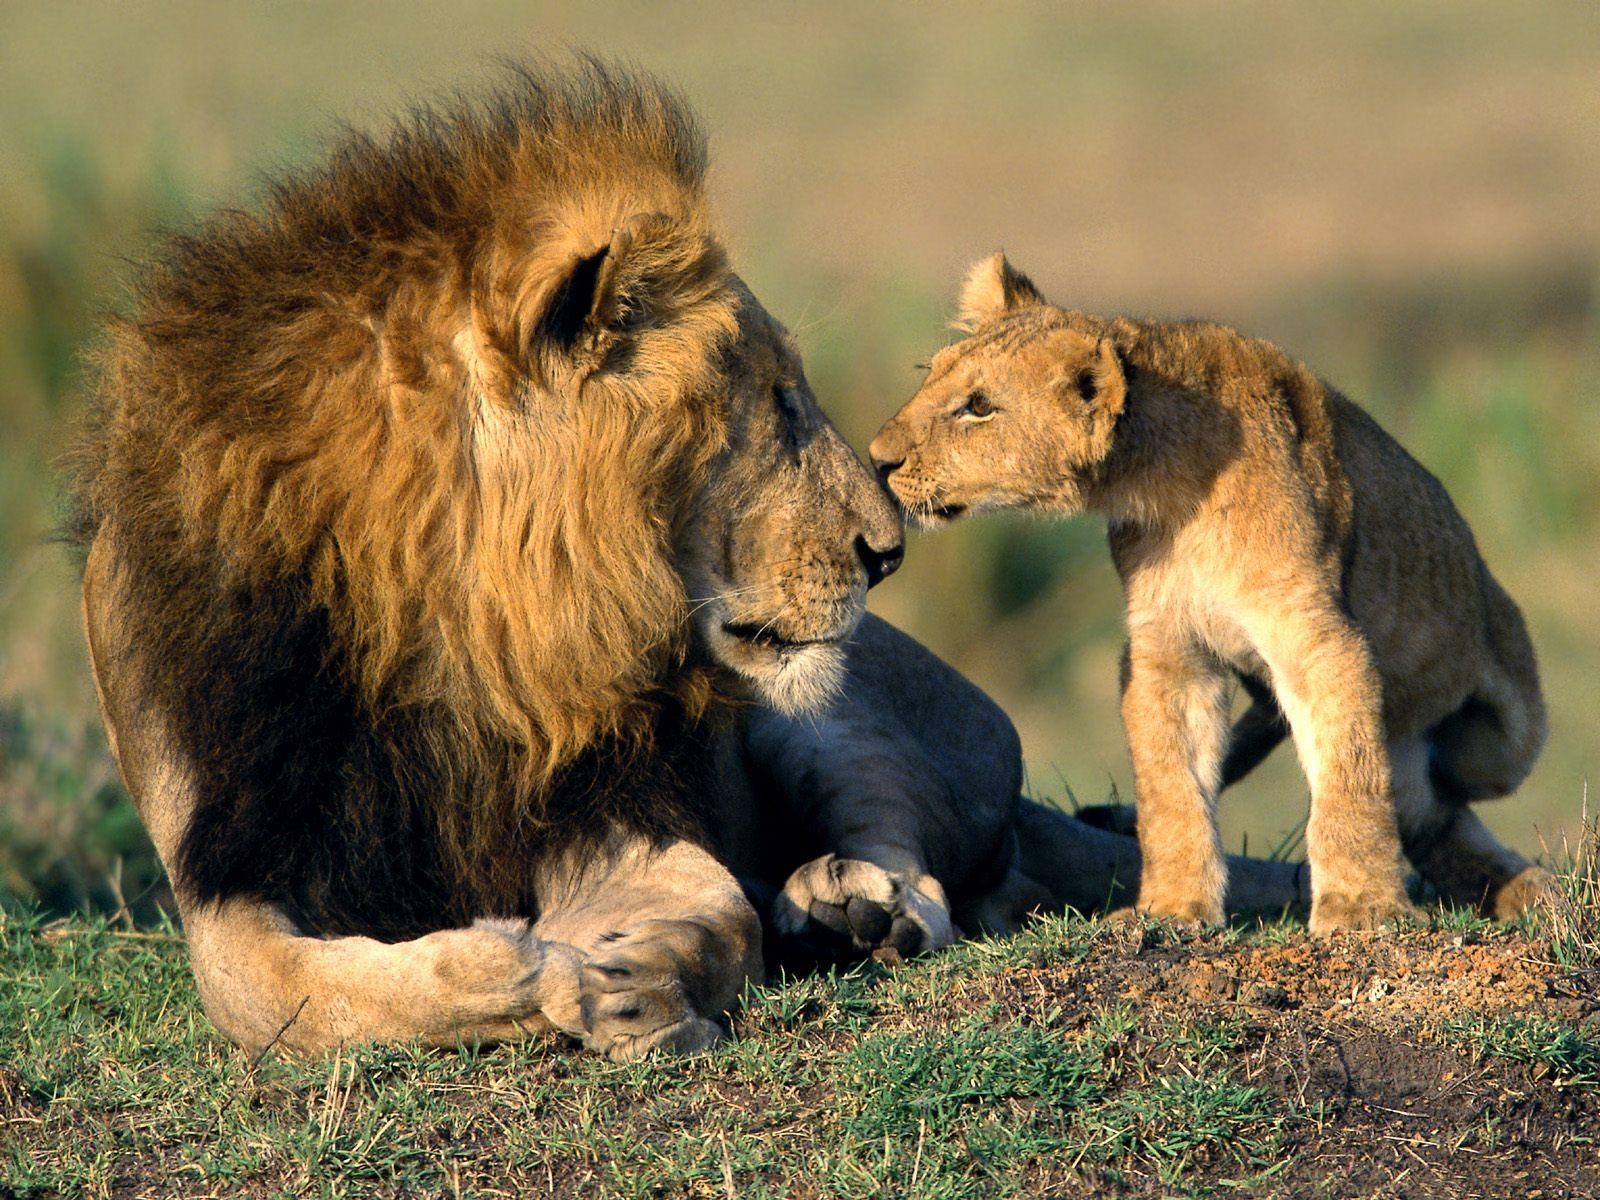 migliore carta da parati animale,animale terrestre,natura,leone,felidae,leone masai